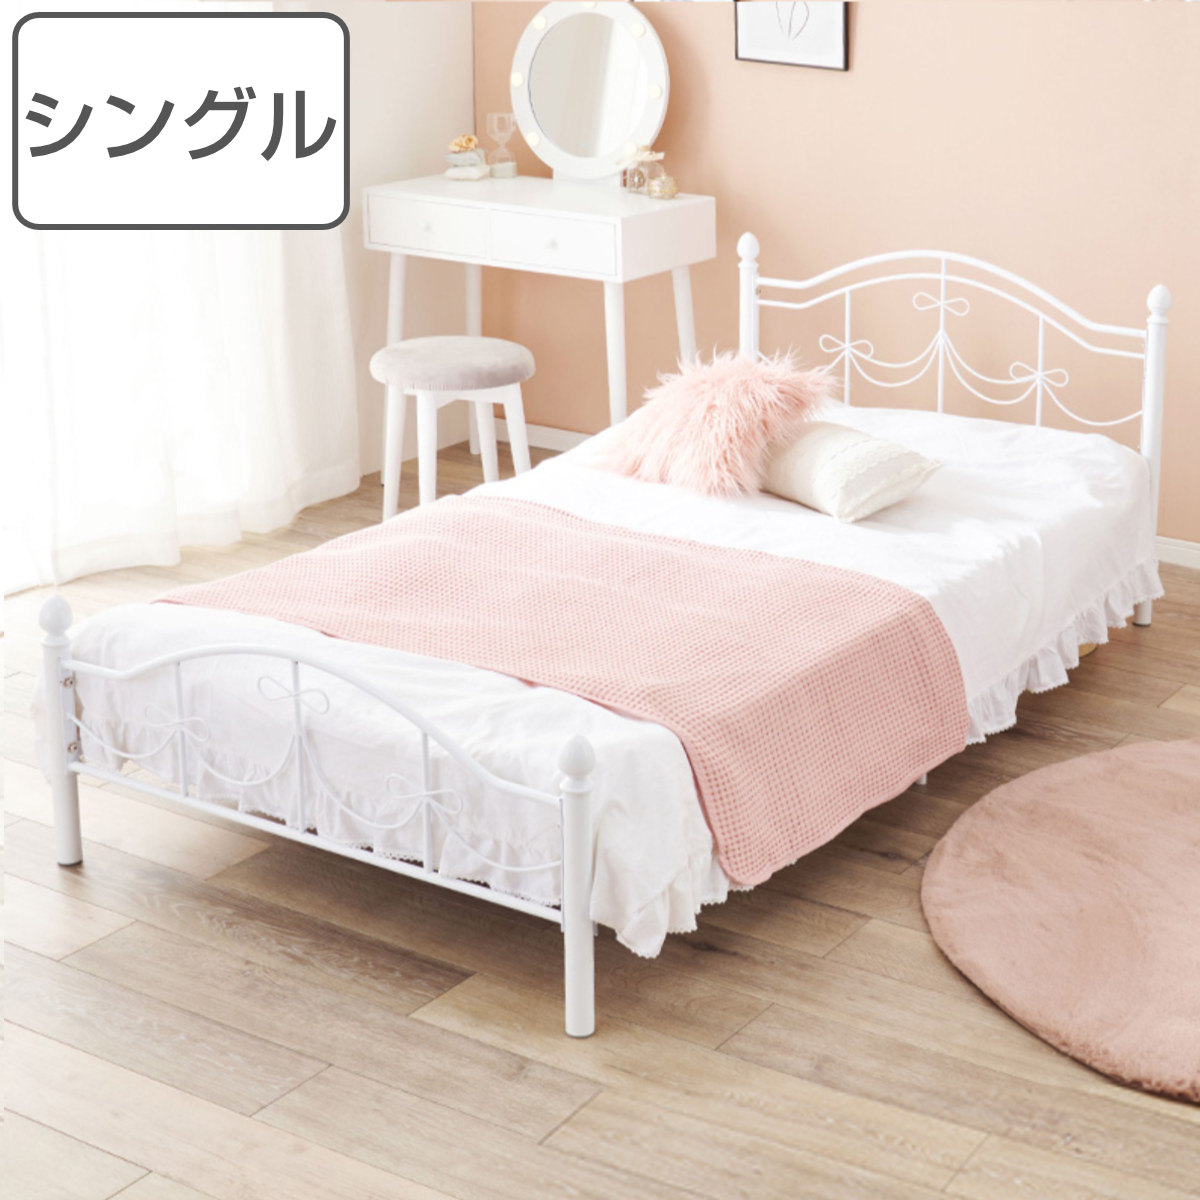 dショッピング |ベッド シングルベッド ベッドフレーム 姫系 白家具